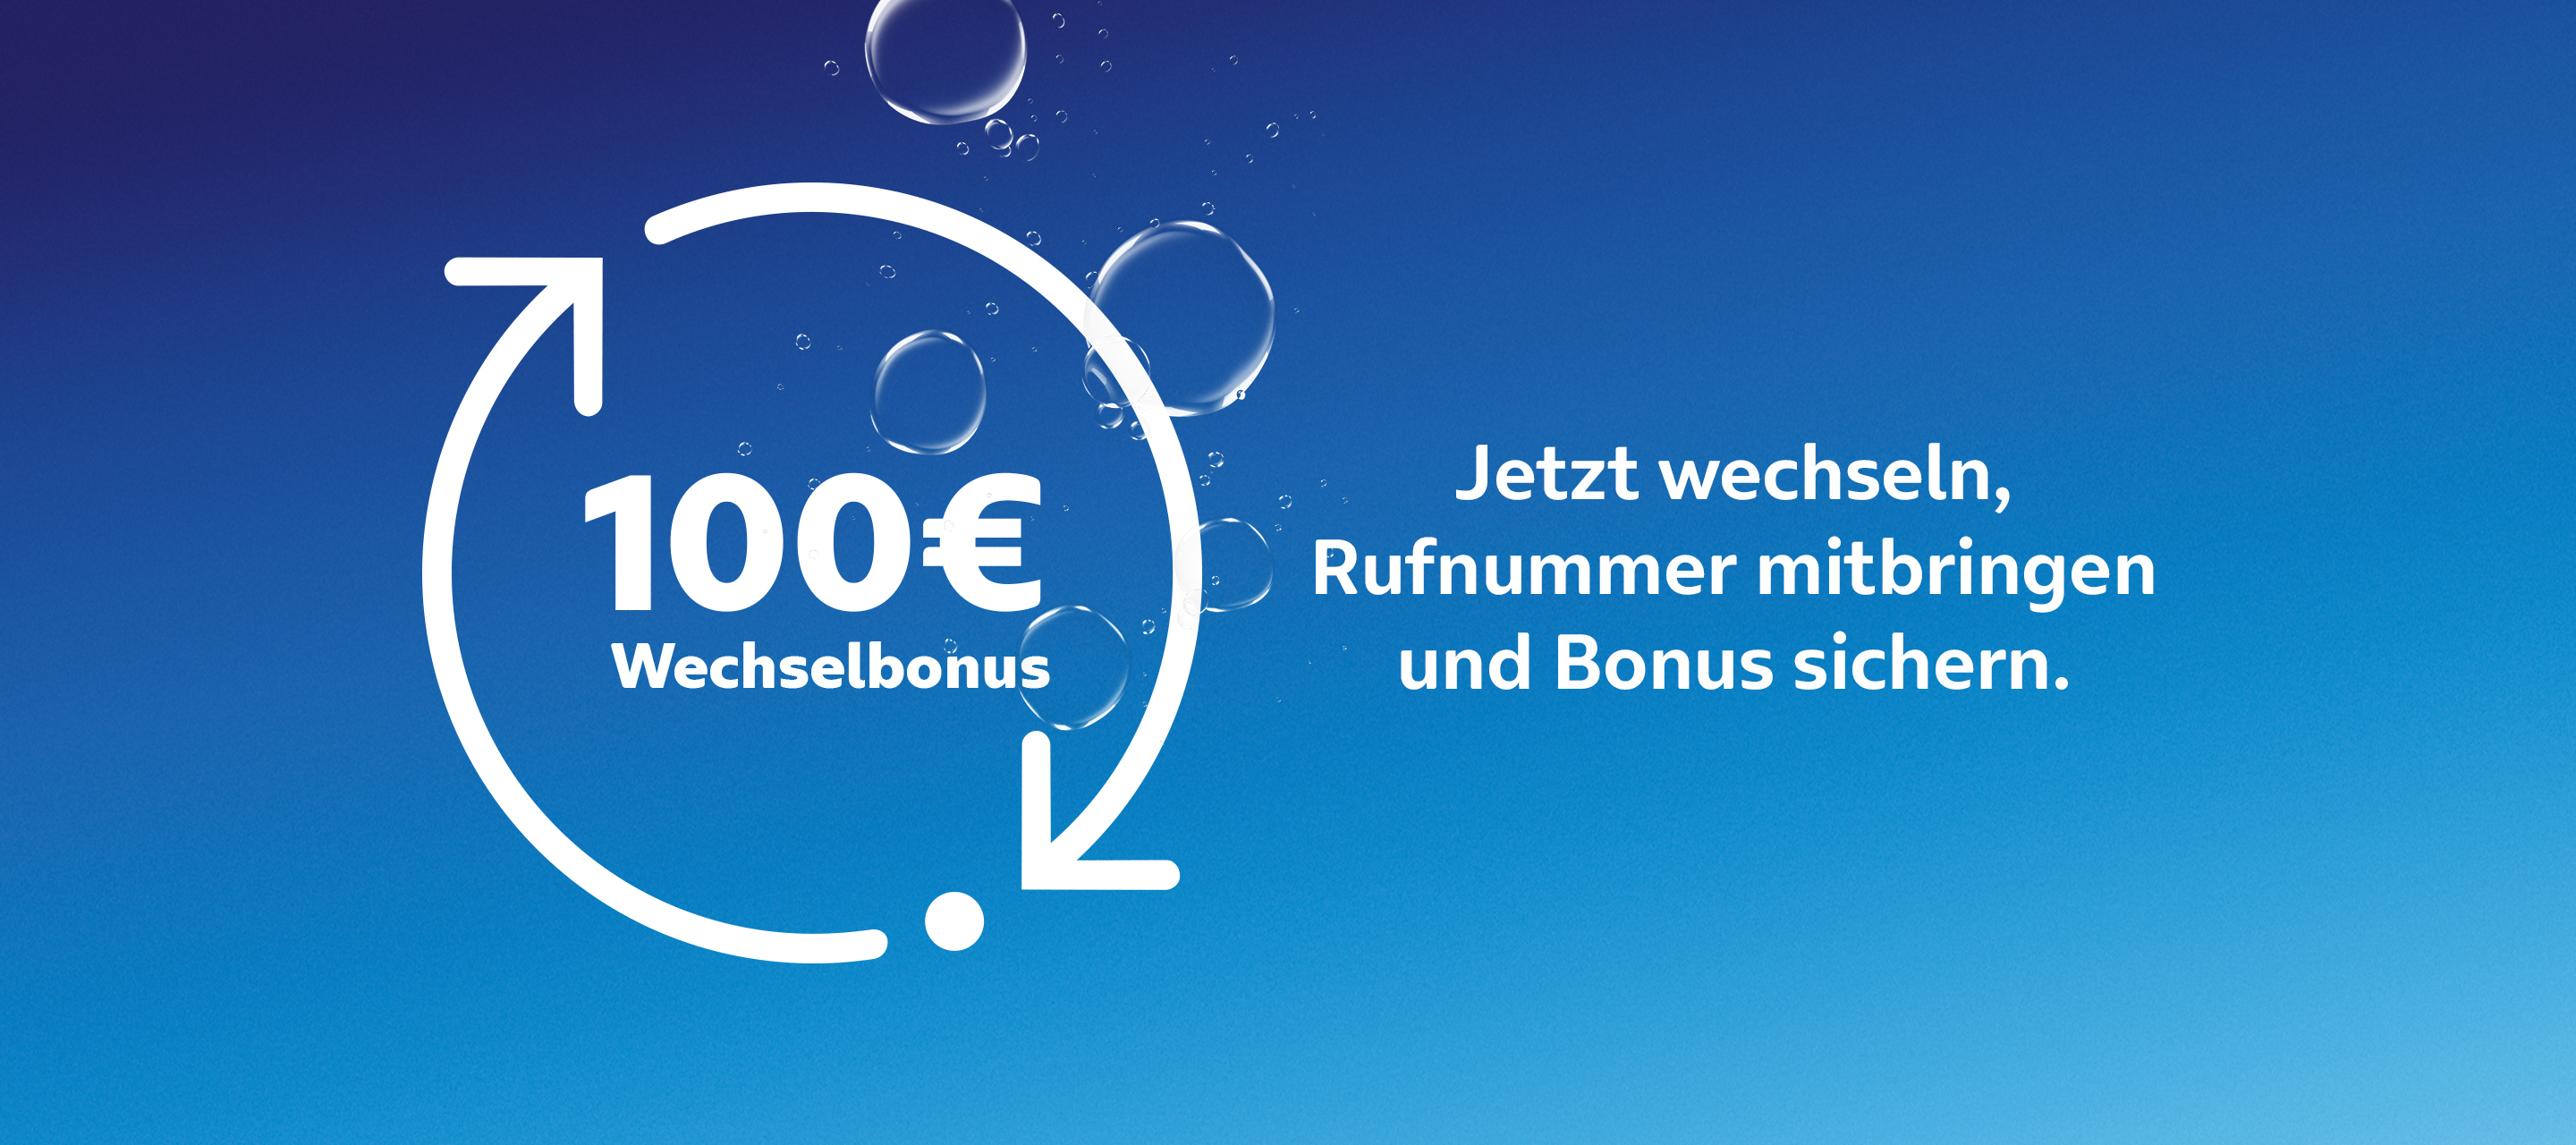 Beim Wechsel zu O₂ 100 EUR Wechselbonus sichern